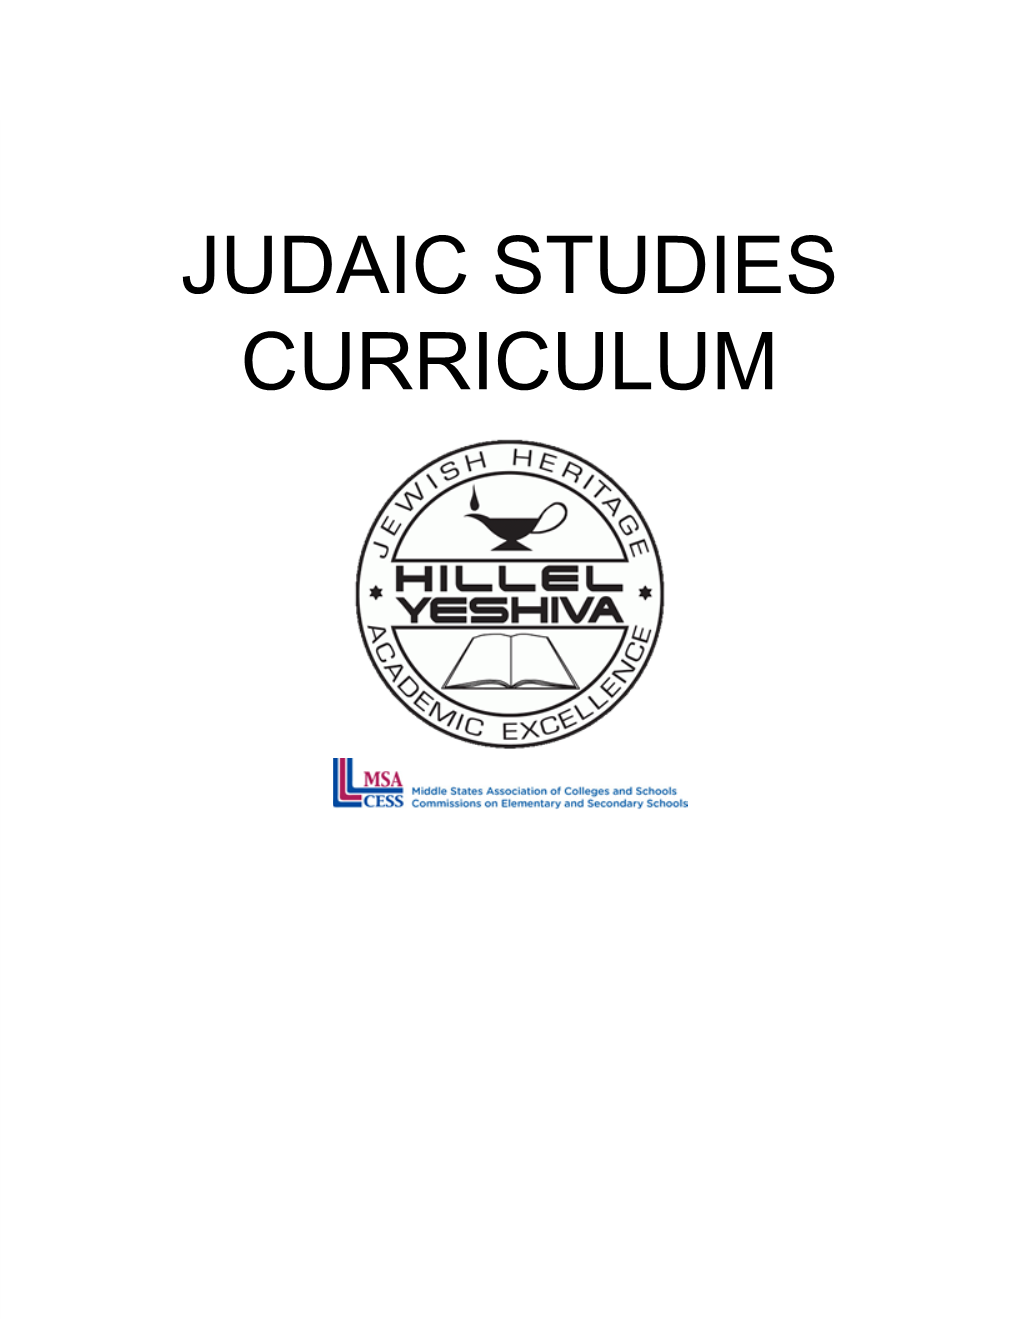 Judaic Studies Curriculum